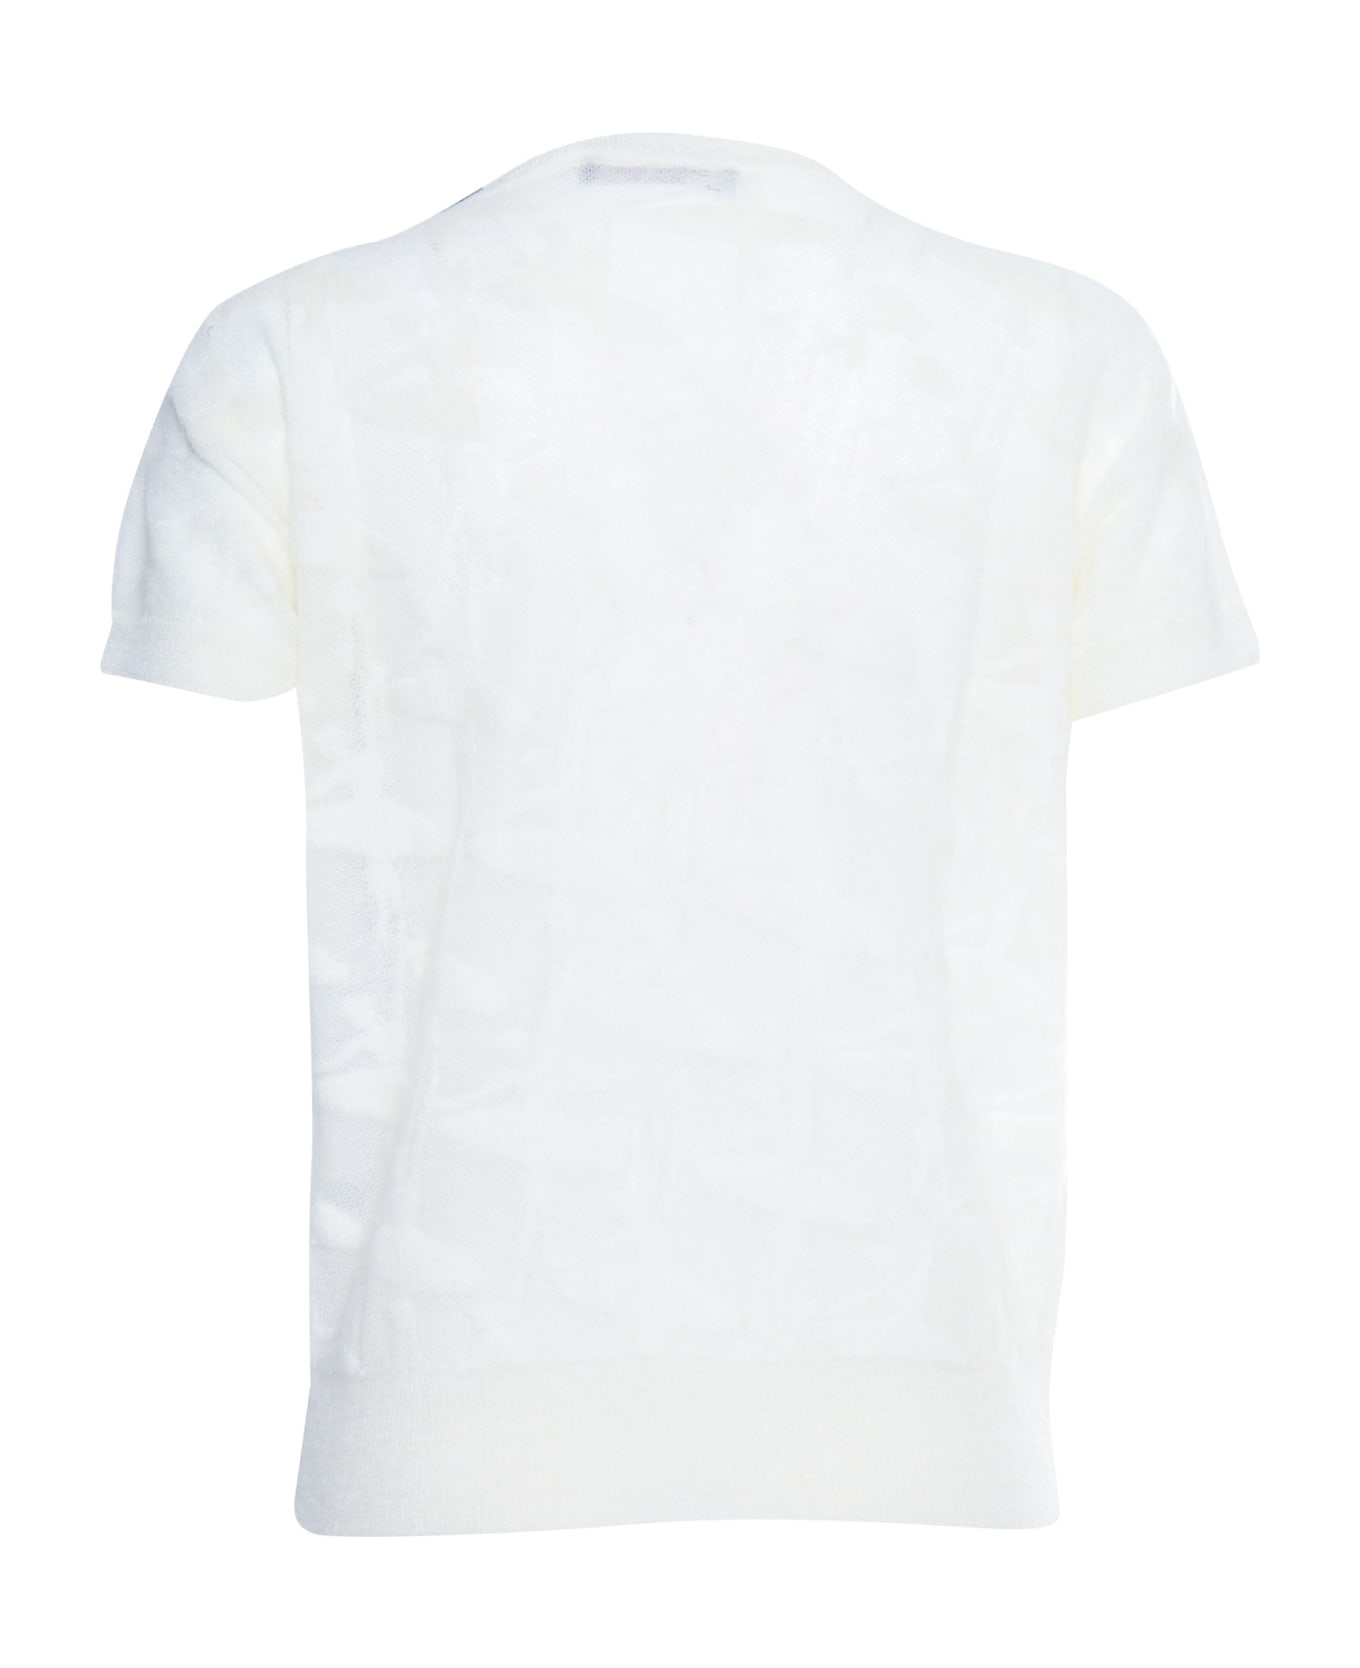 Max Mara Studio Knitted Sleeveless T-shirt - WHITE